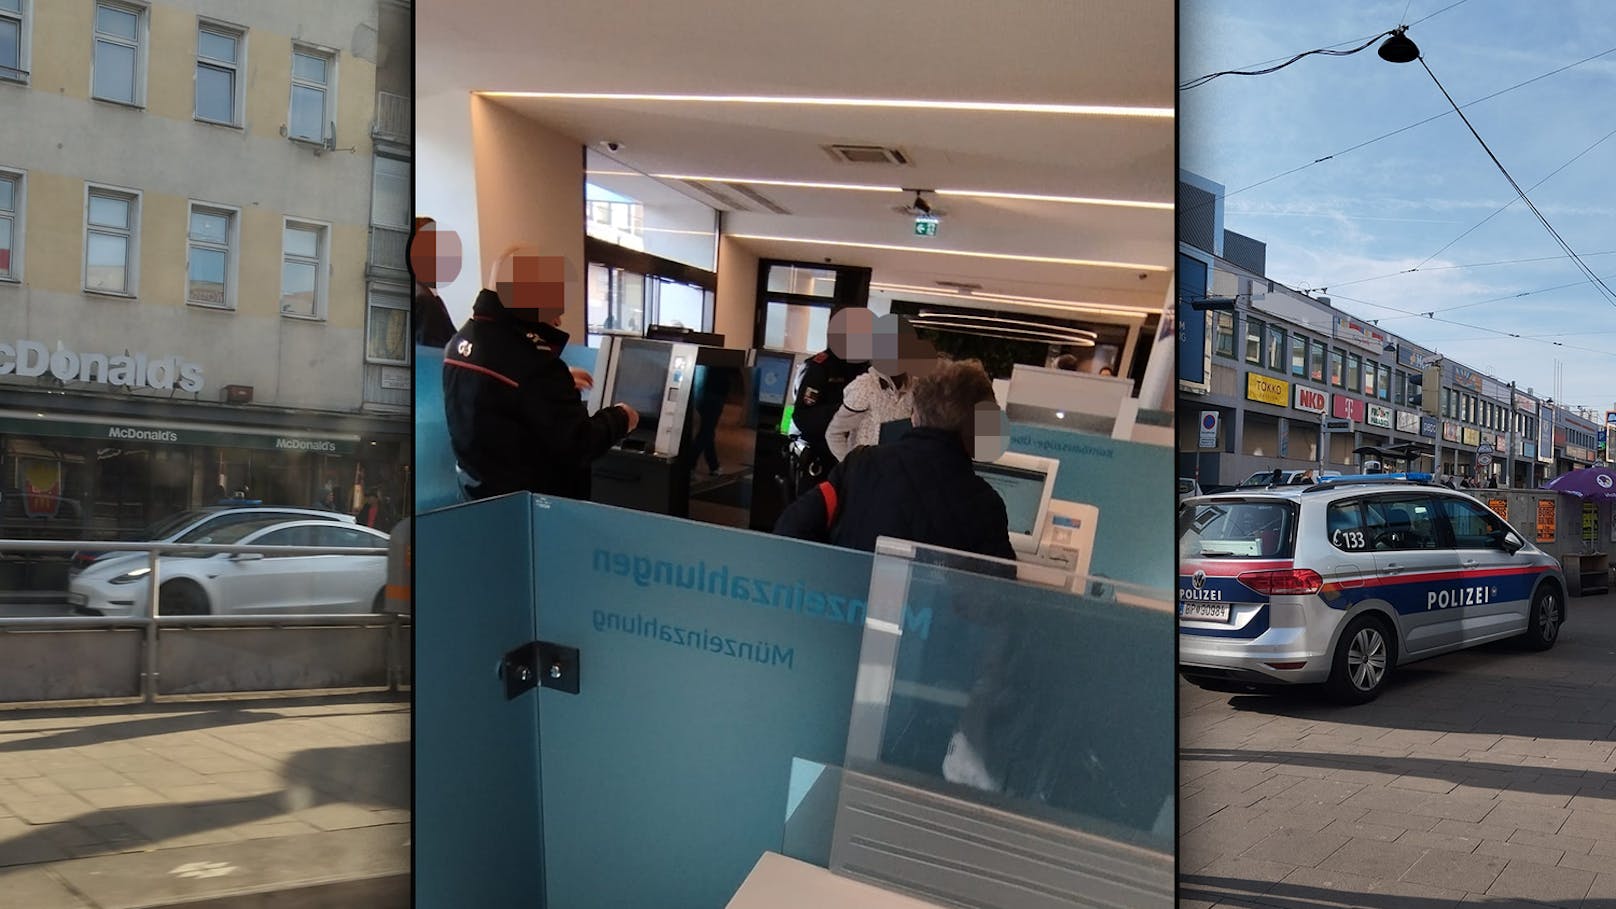 Festnahme in der Bank: Mann wollte Bankomat "öffnen"